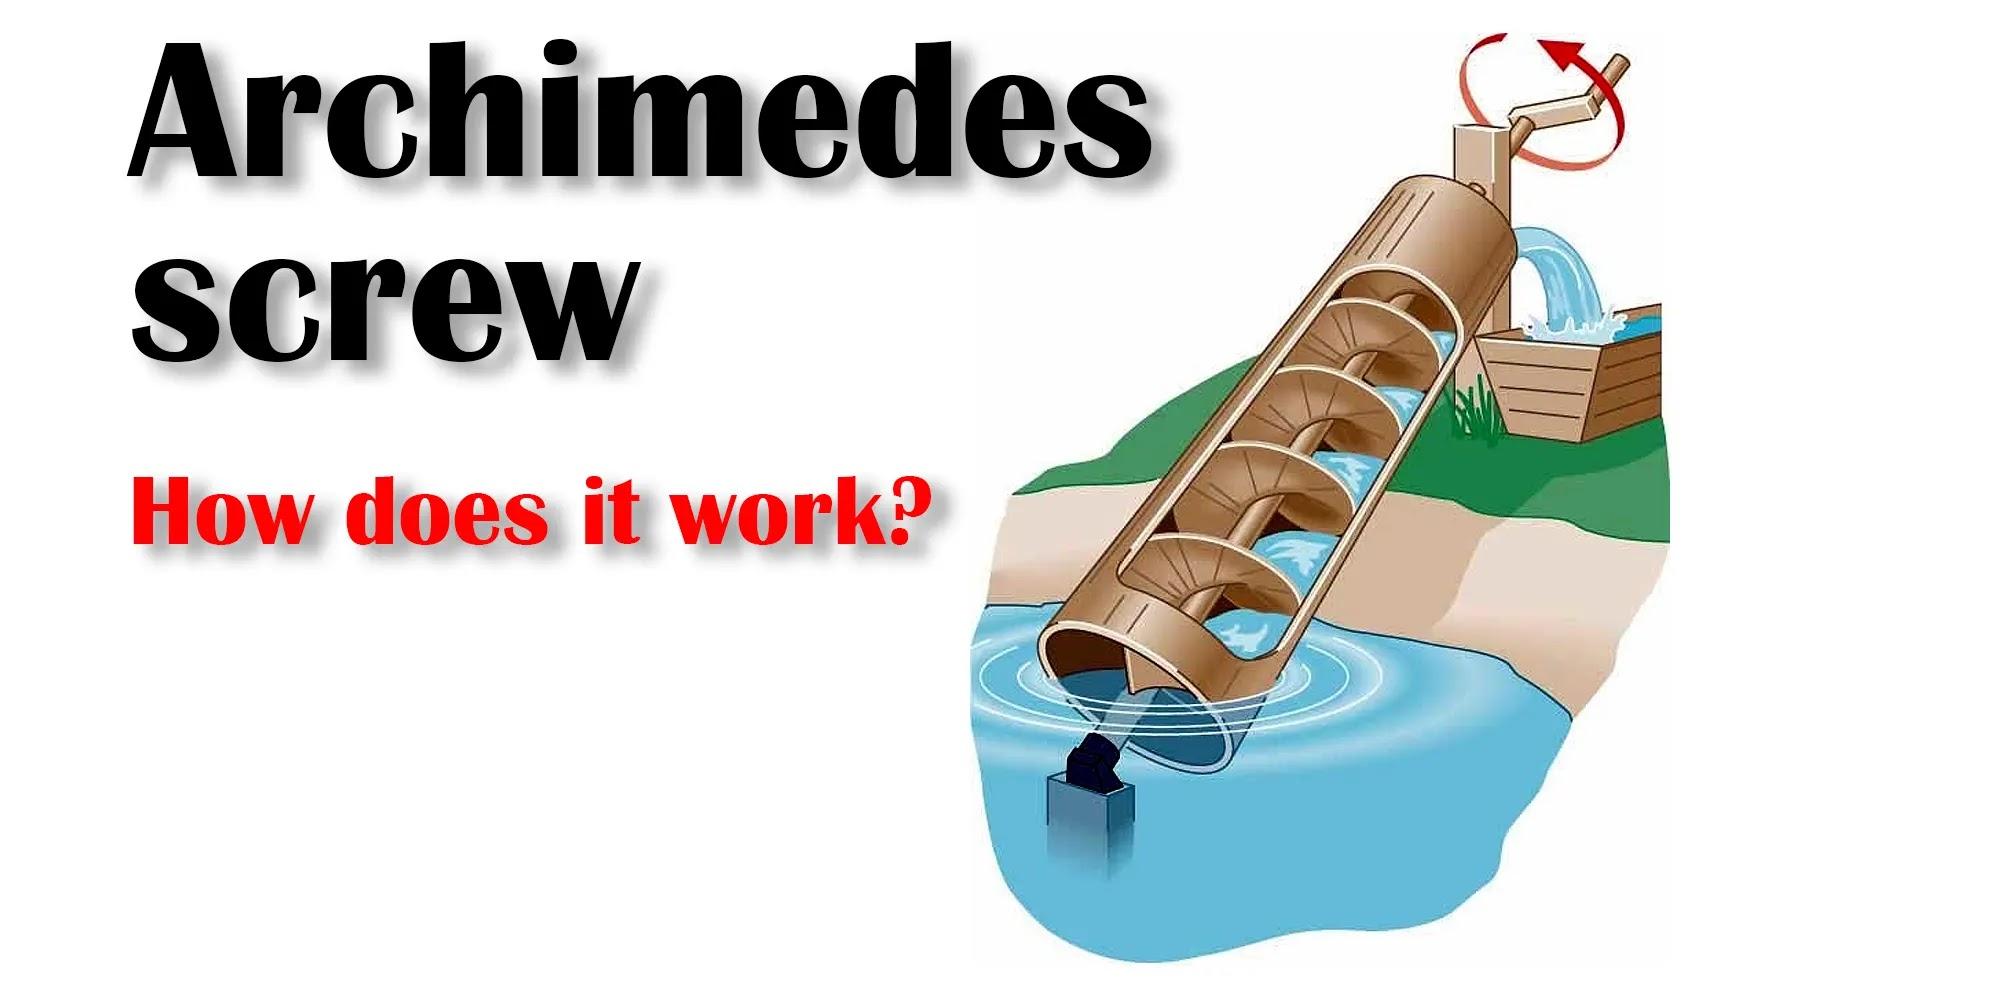 Tornillo de Arquímedes: ¡La increíble máquina hidráulica griega!